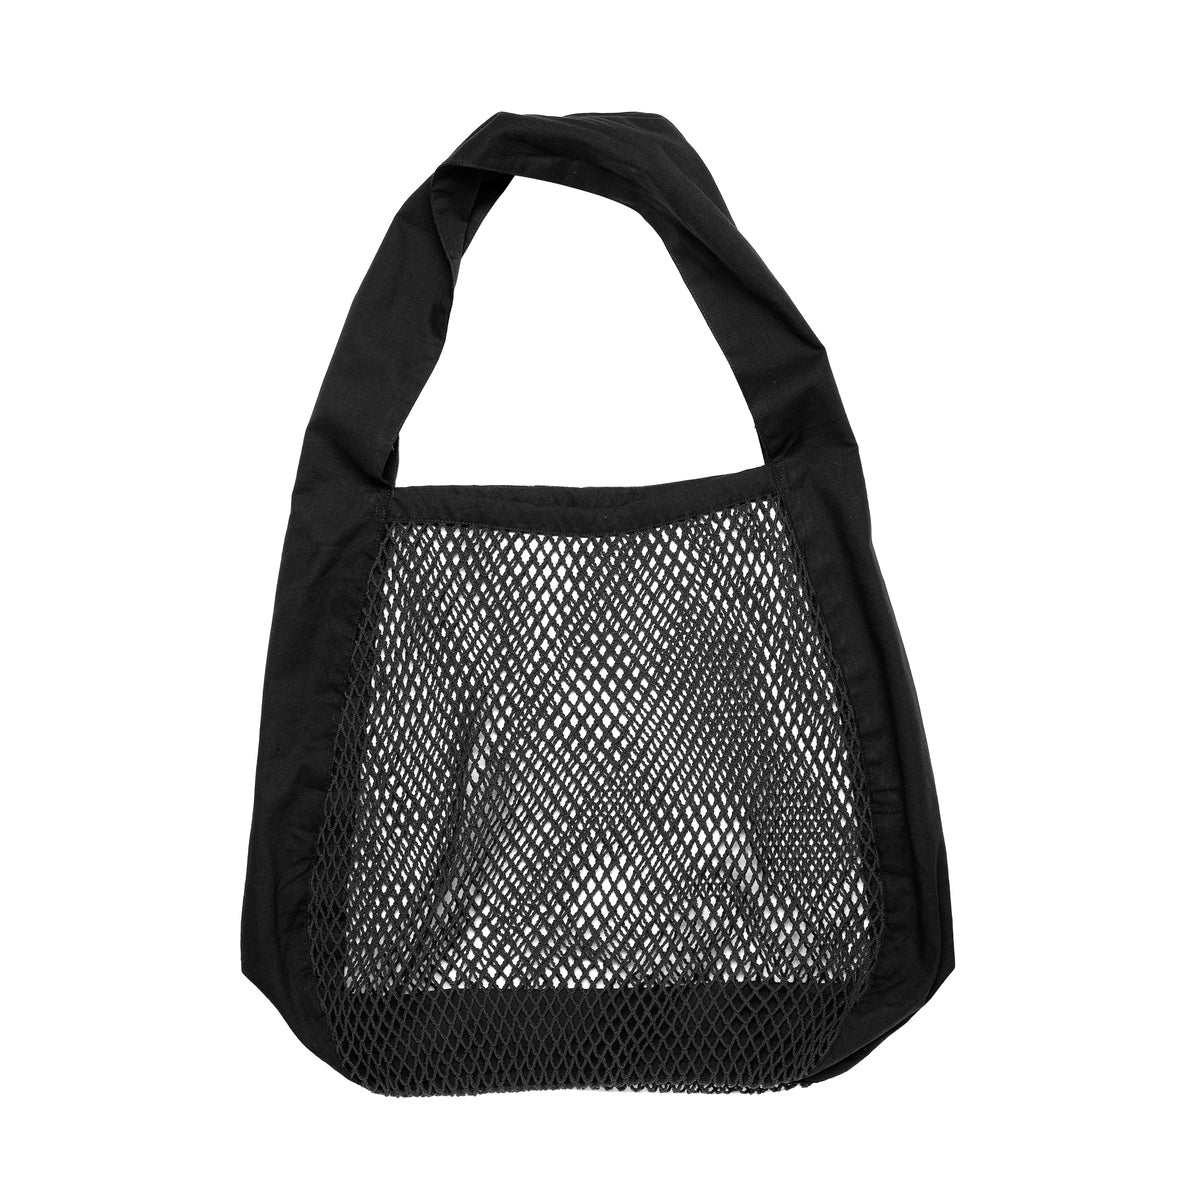 Organic Cotton Net Shoulder Bag in Black